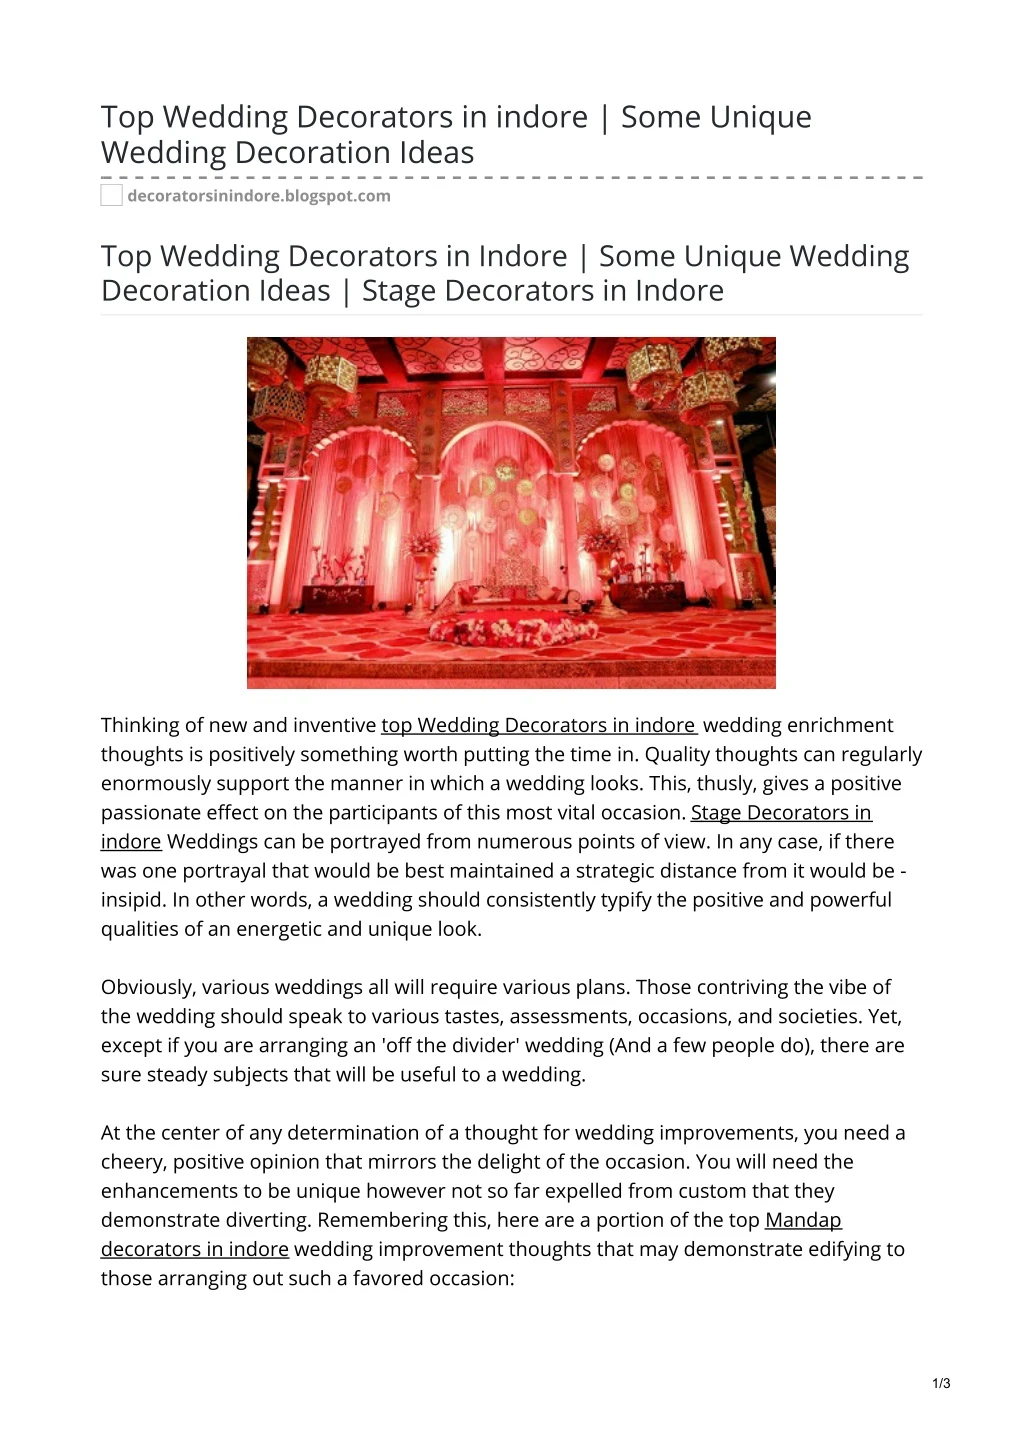 top wedding decorators in indore some unique